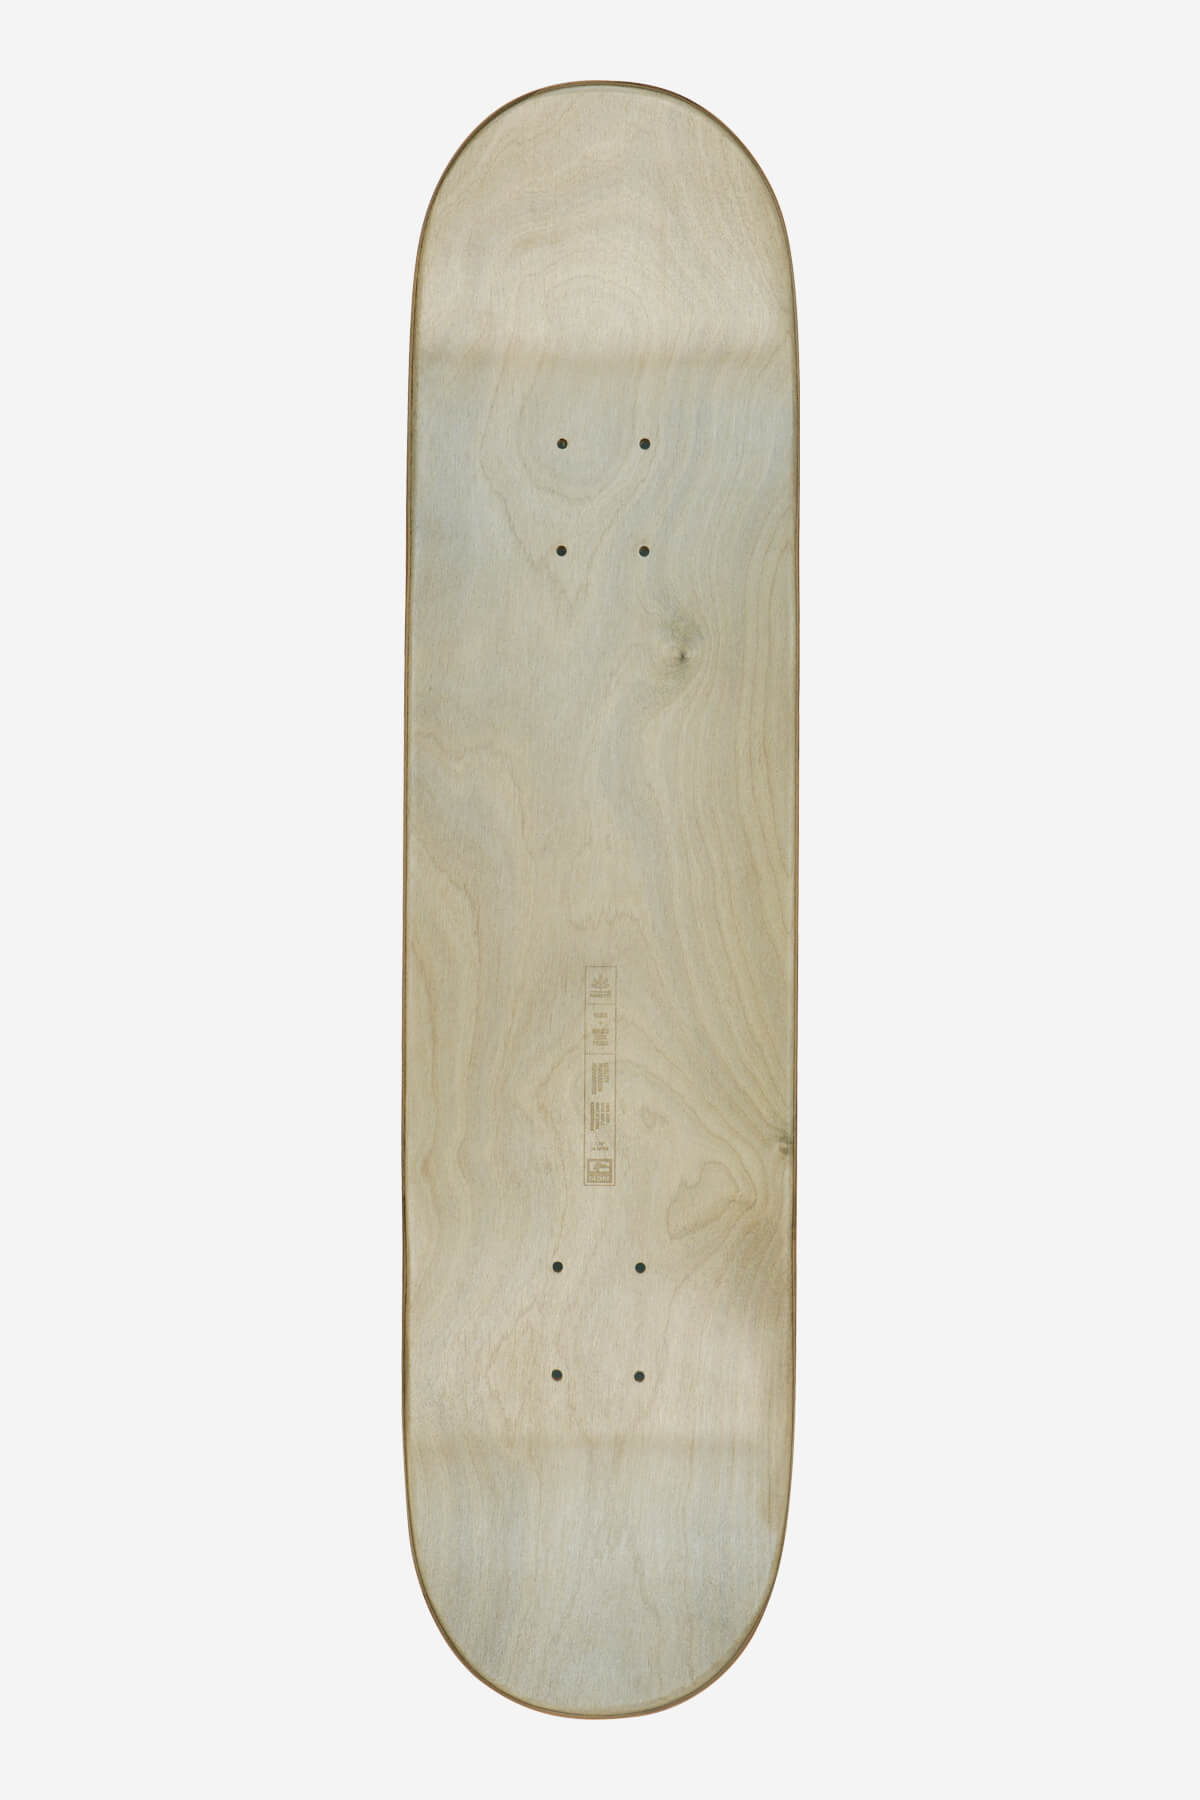 Globe - Goodstock - Topaz - 7.75" Skateboard Deck